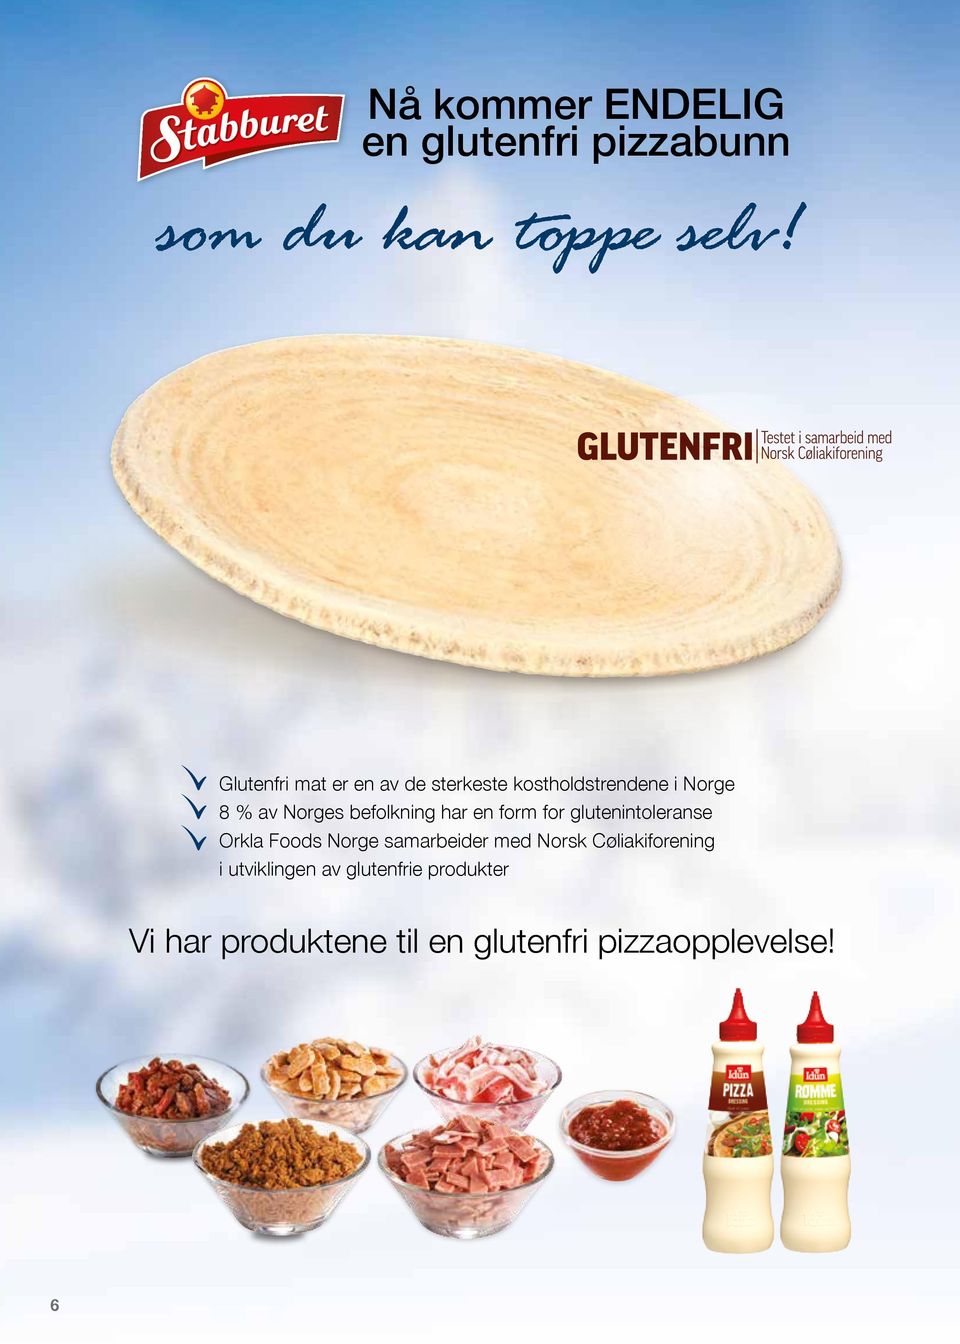 befolkning har en form for glutenintoleranse Orkla Foods Norge samarbeider med